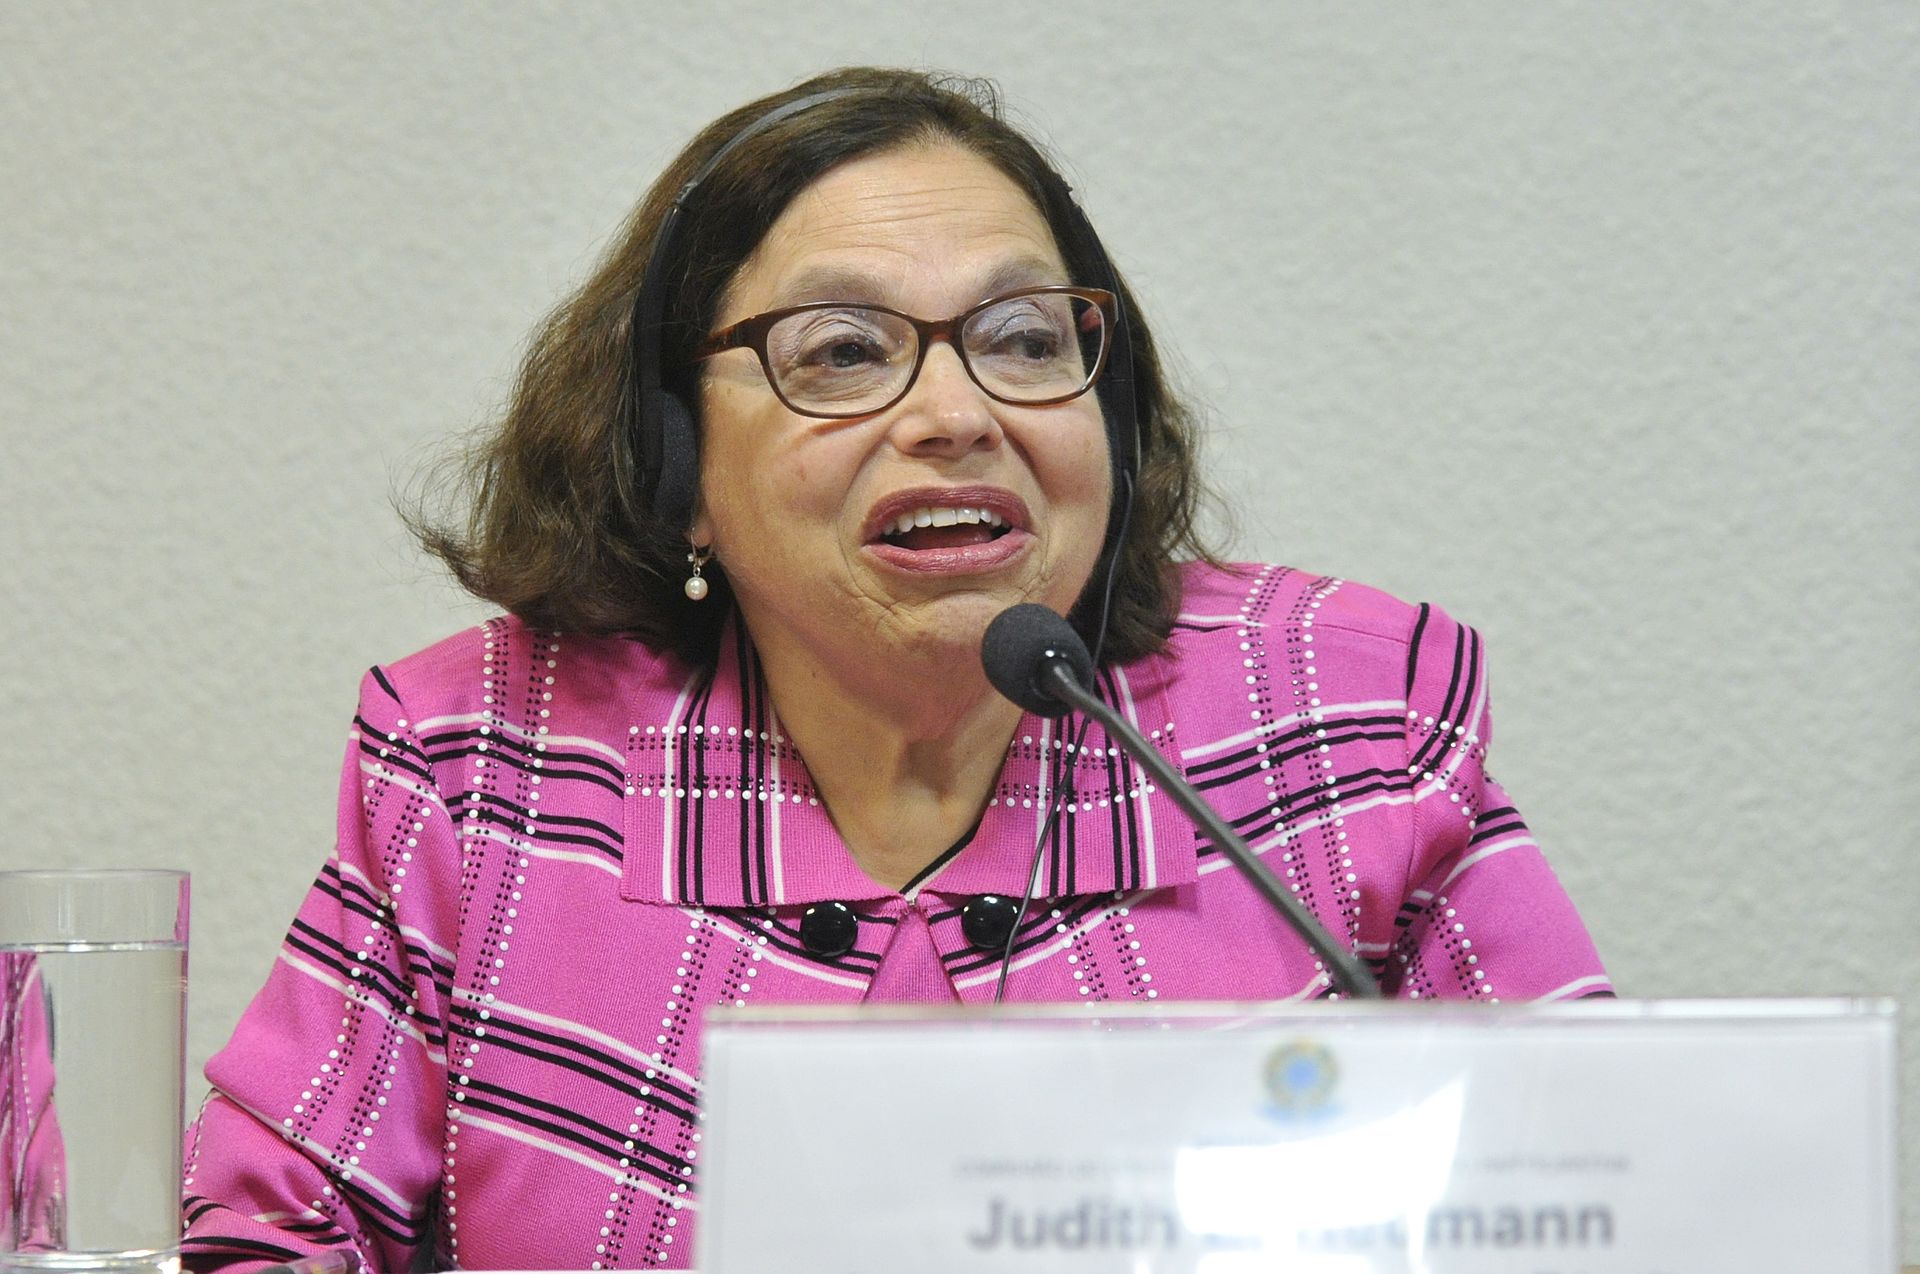 Judy Heumann 2015 bei einer Konferenz